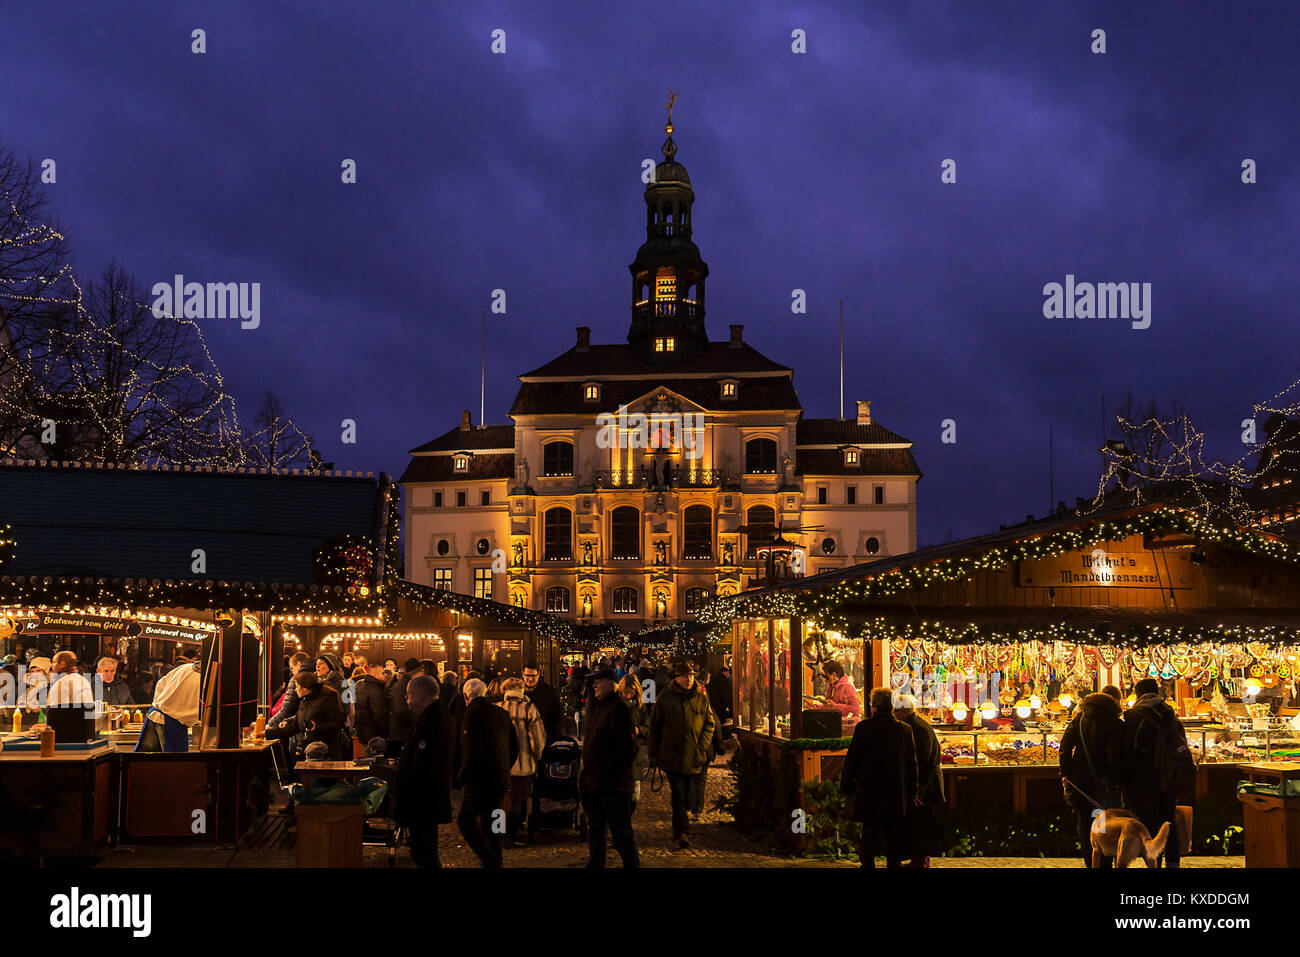 Hôtel de ville avec marché de Noël,lumineux colorés aux alentours de Noël, Lunebourg, Basse-Saxe, Allemagne Banque D'Images